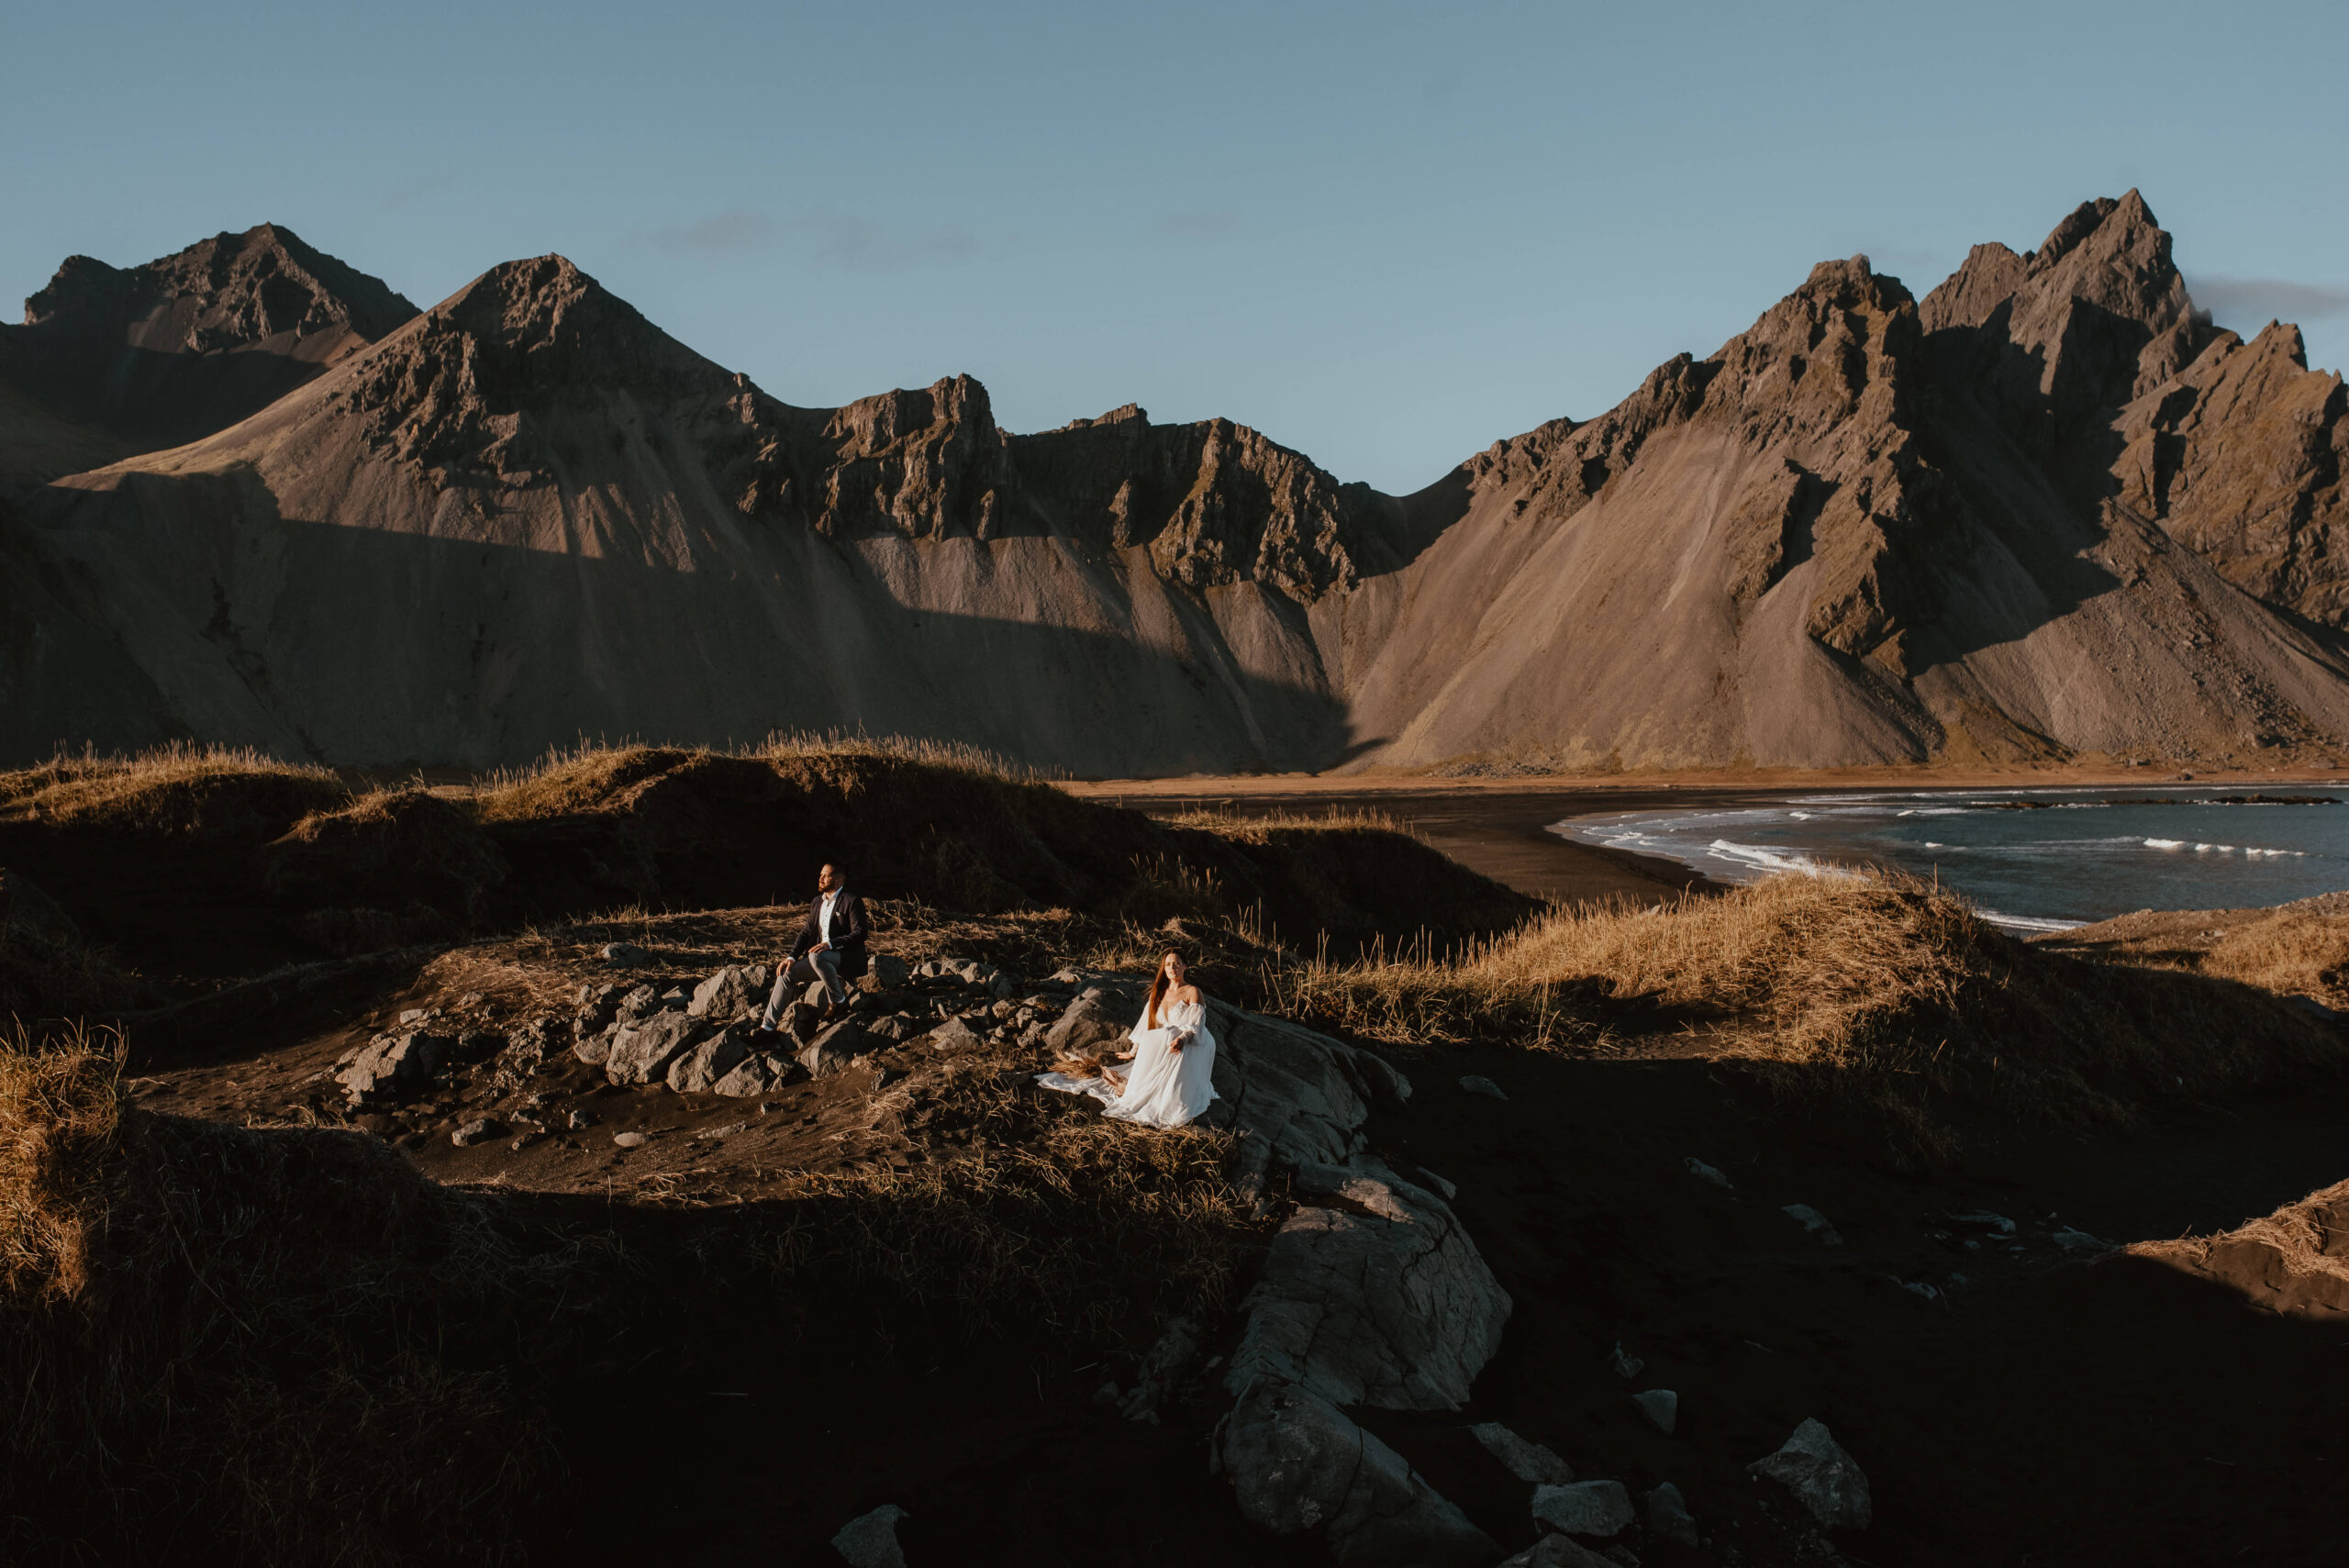 Die Fotos zeigen ein junges Brautpaar in Hochzeitskleidung auf Island an einem warmen Tag. Im Hintergrund sind die riesigen Berge und das Meer zu sehen. Das Paar klettert gemeinsam den grasbewachsenen Hügel hinauf und hält sich dabei an den Händen, während sie lachen und im Hintergrund das Rauschen der Wellen zu hören ist. Diese Szene eines Auslandshochzeitsfotoshootings erinnert an eine legendäre Szene aus dem Film "Titanic". Als Hochzeitsfotograf aus Chiemgau bin ich stolz, solche wunderschönen Momente auf Bildern festhalten zu können. Katarzyna Nord Fotografie